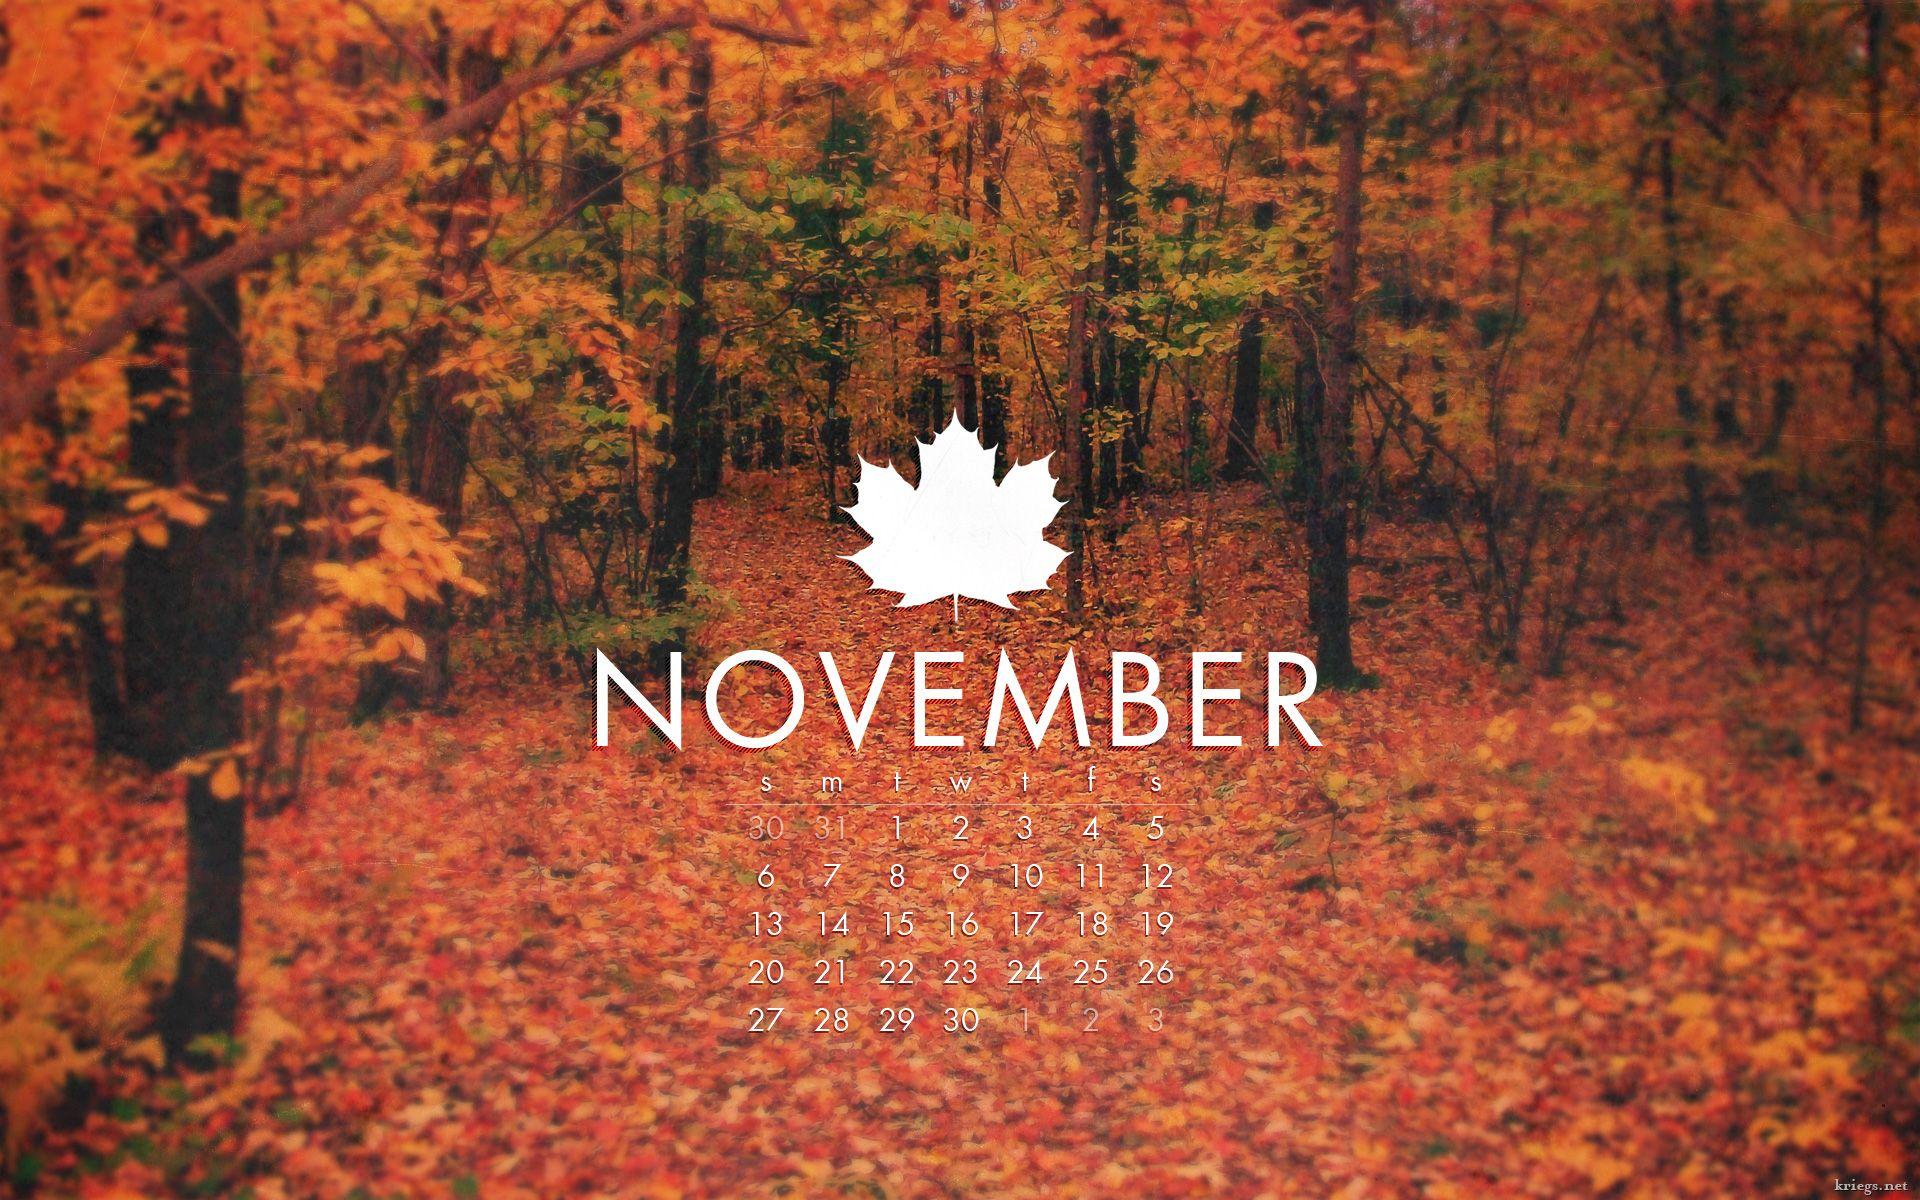 Aesthetic November Wallpapers - Top Những Hình Ảnh Đẹp